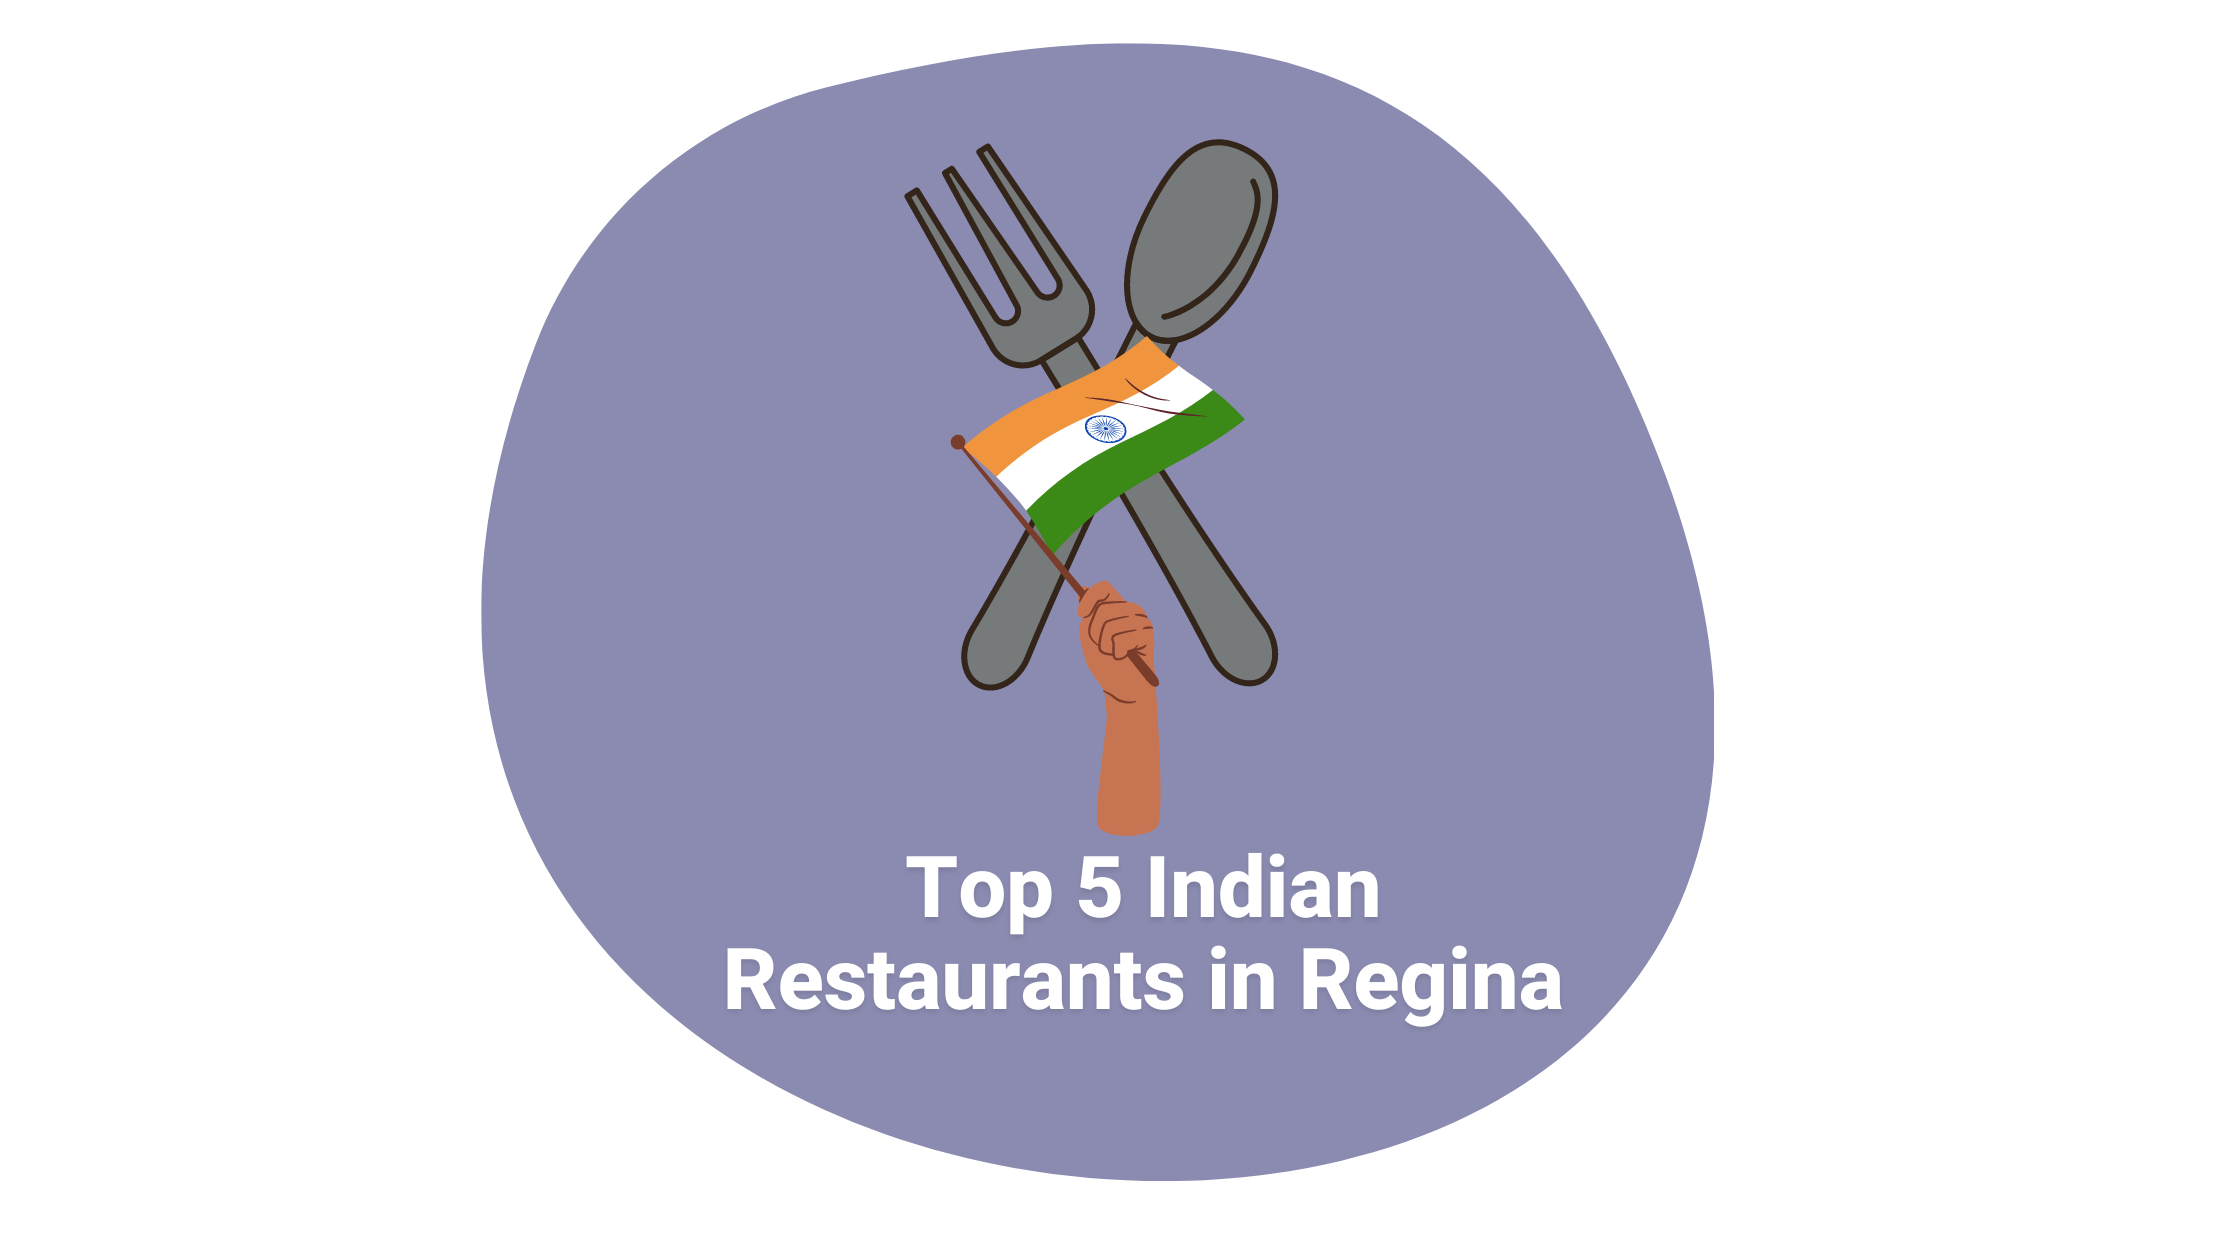 Top 5 Indian Restaurants in Regina